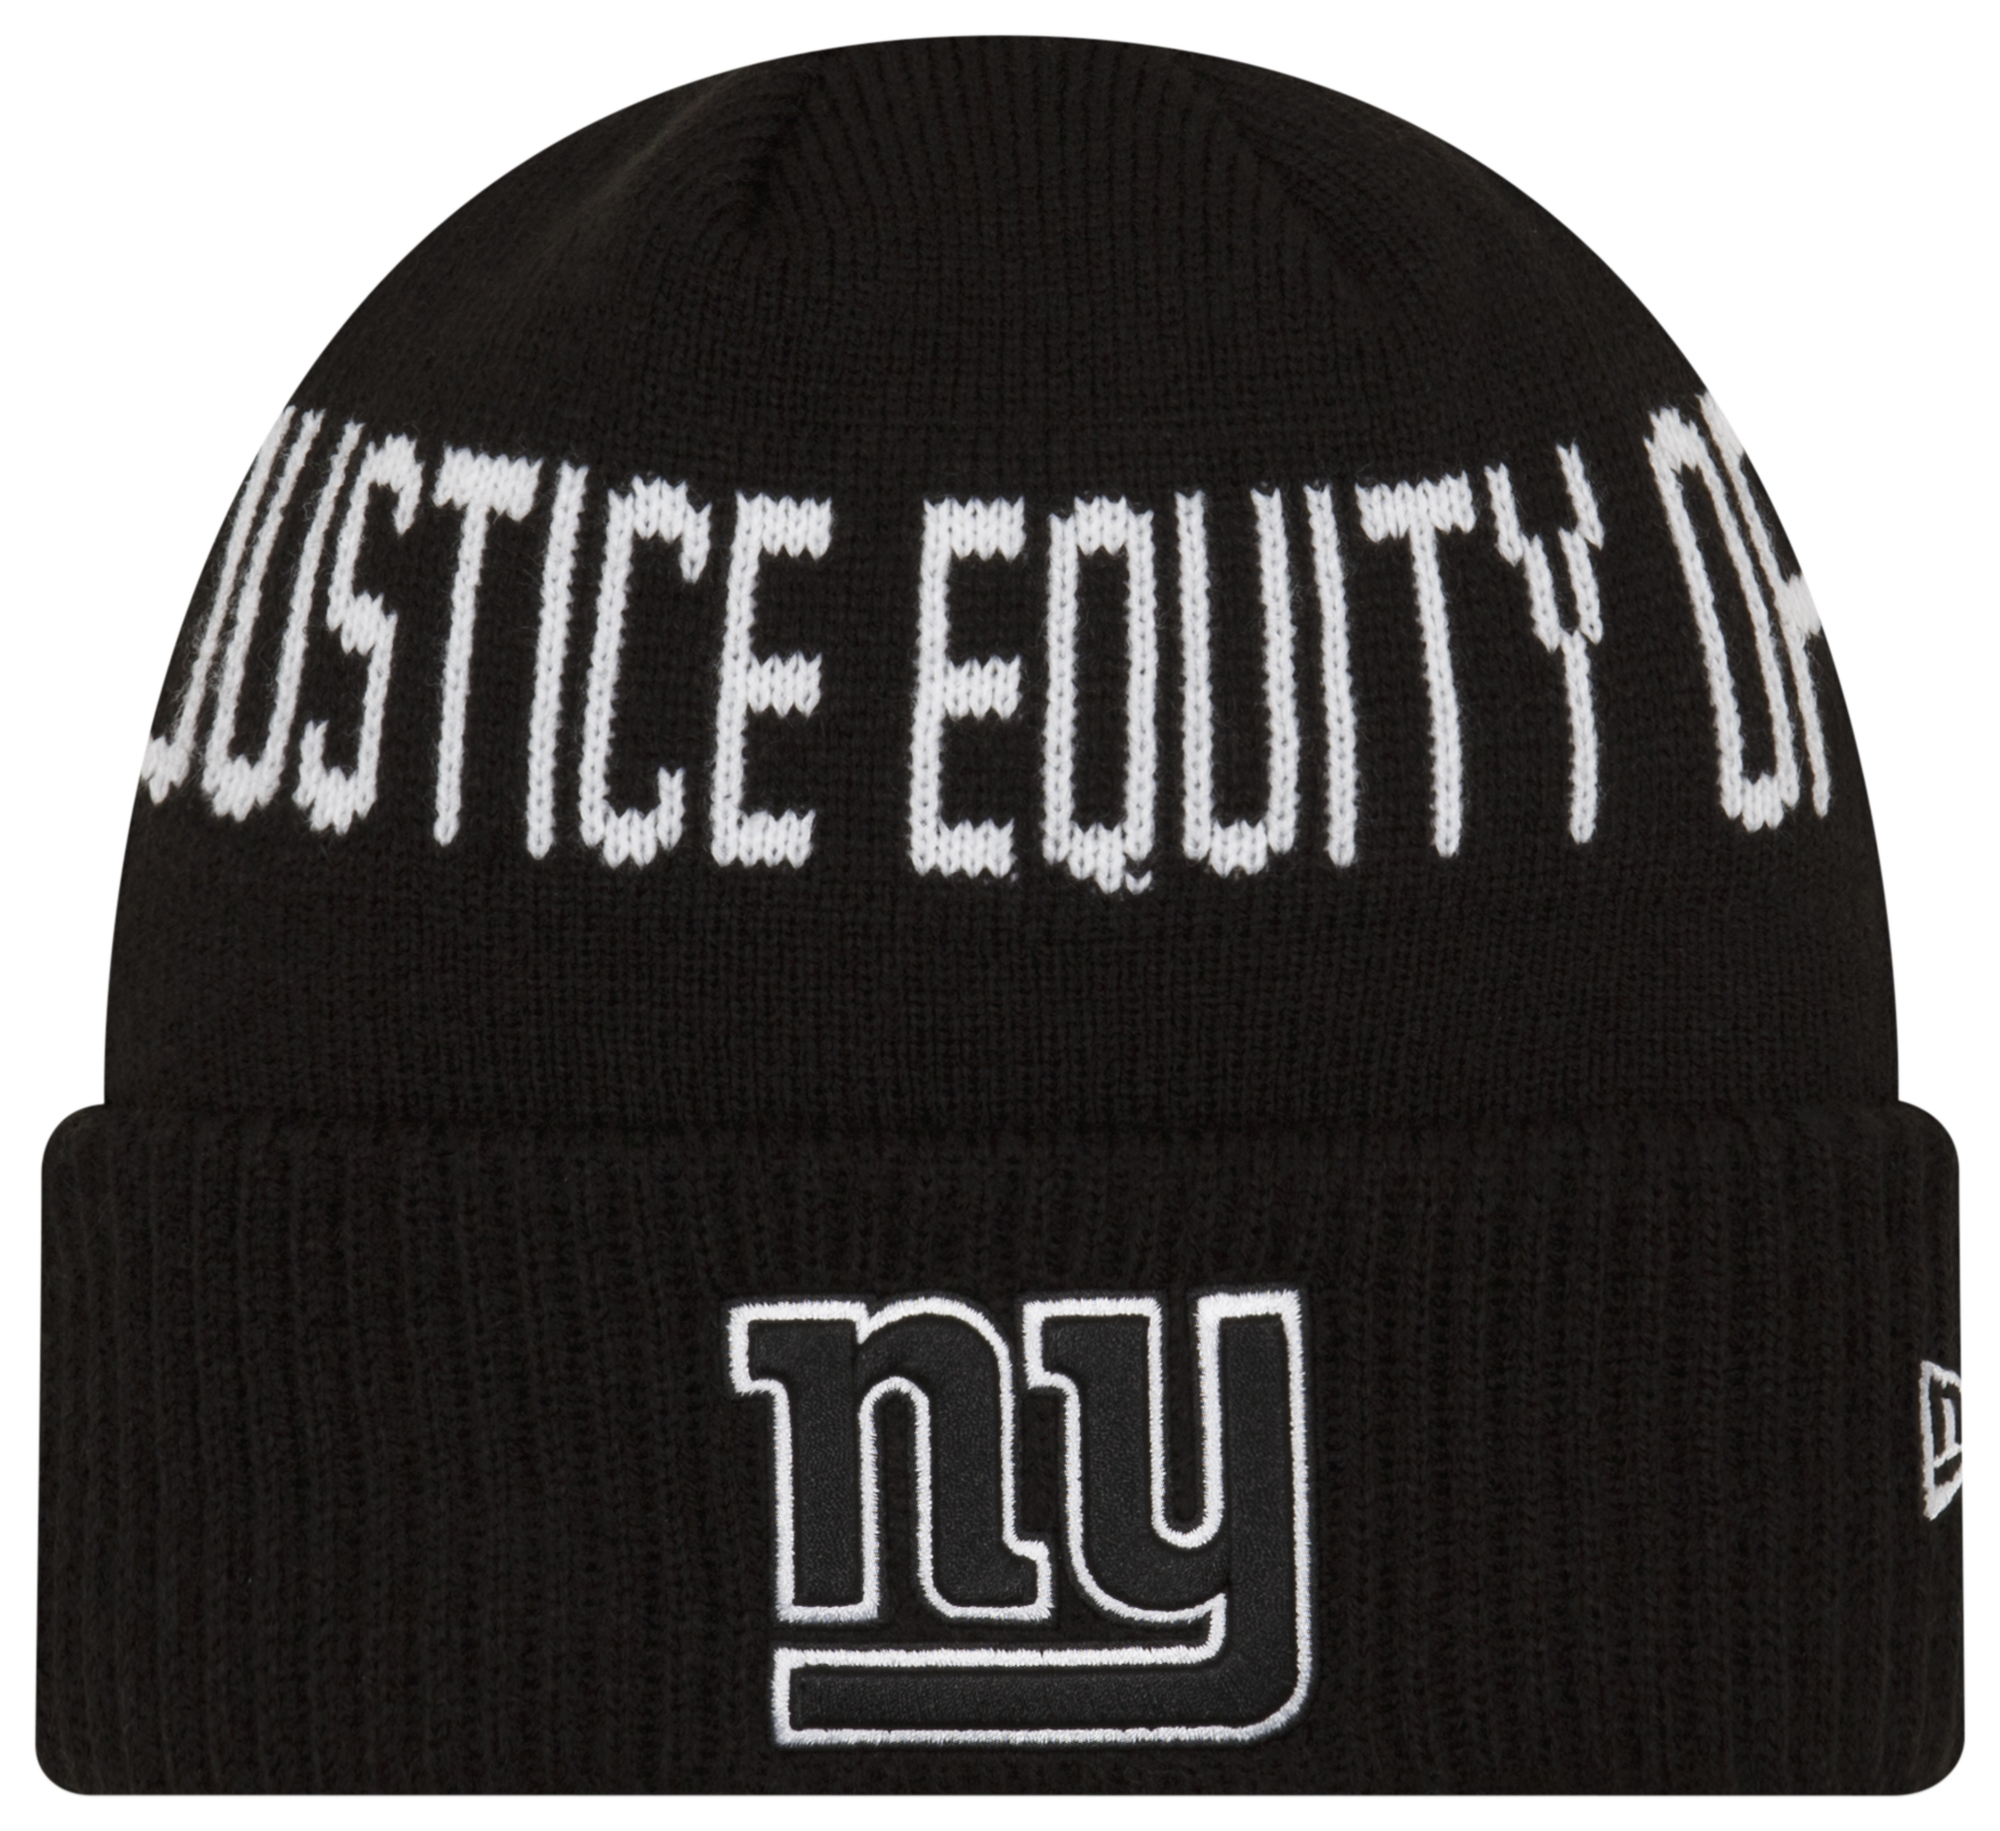 New Era Giants Social Justice Knit Cap